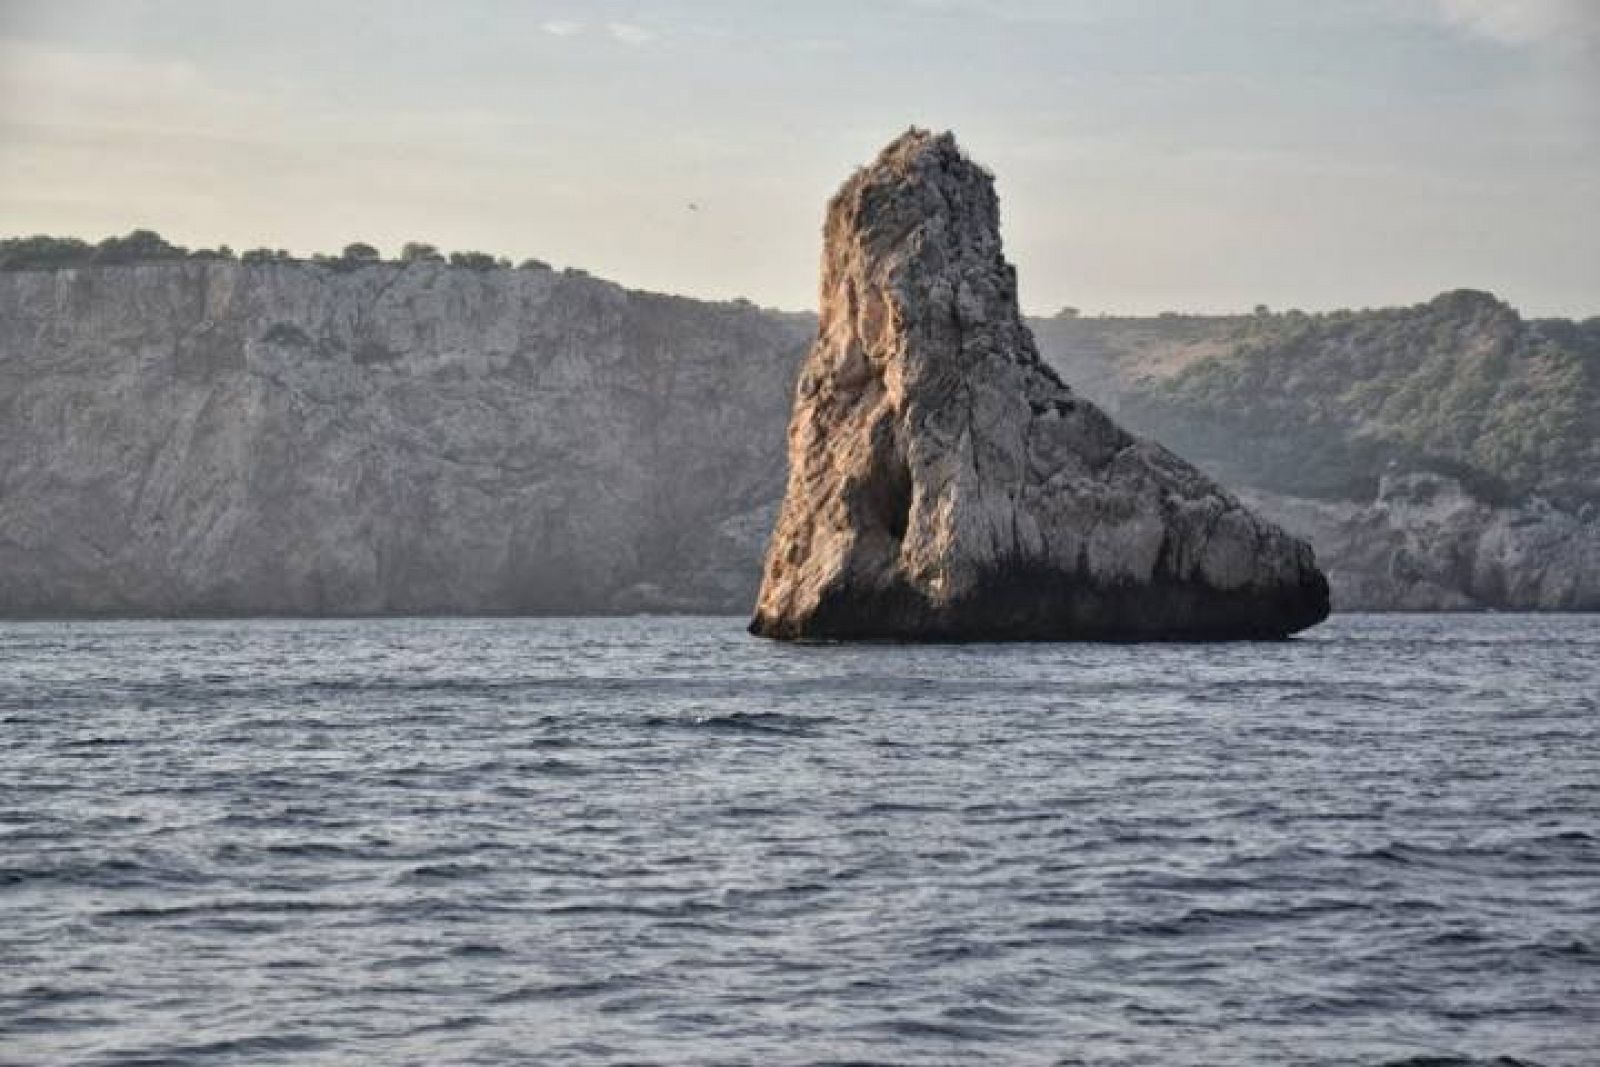  Imagen de la Costa Brava tomada desde las Islas Medas, un espacio declarado Reserva Marina Integral y que forma parte de la Red Natura 2000. 